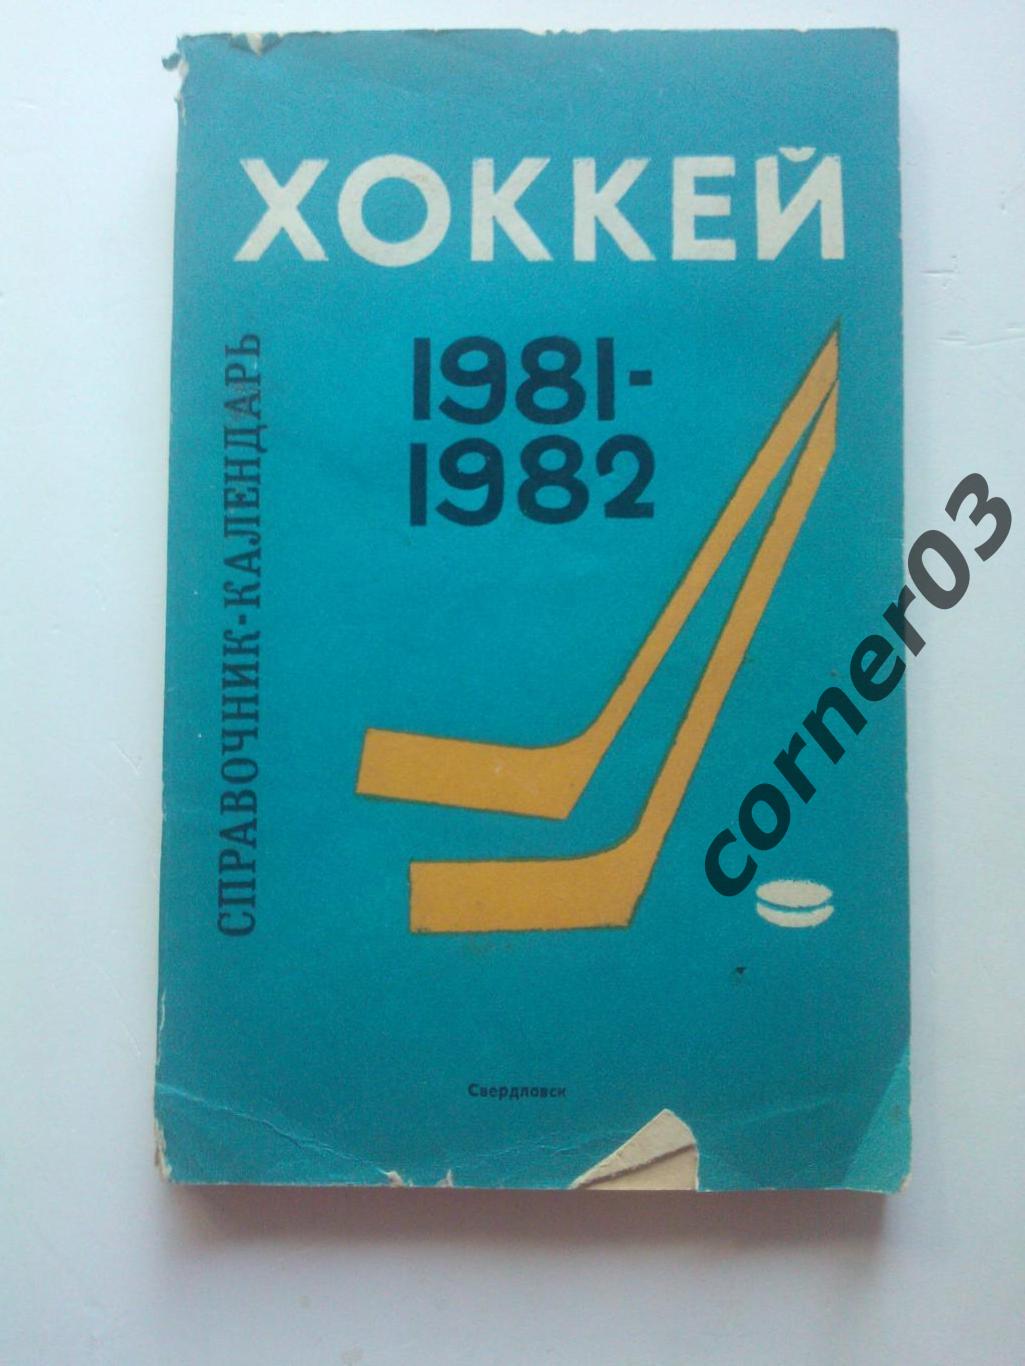 Свердловск 1981 - 82